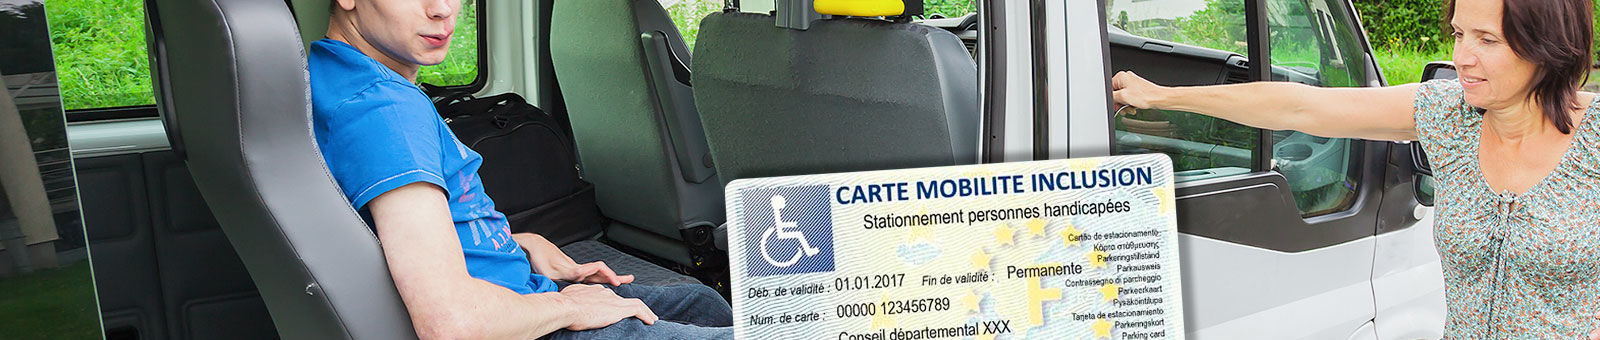 Transports pour les personnes handicapées.